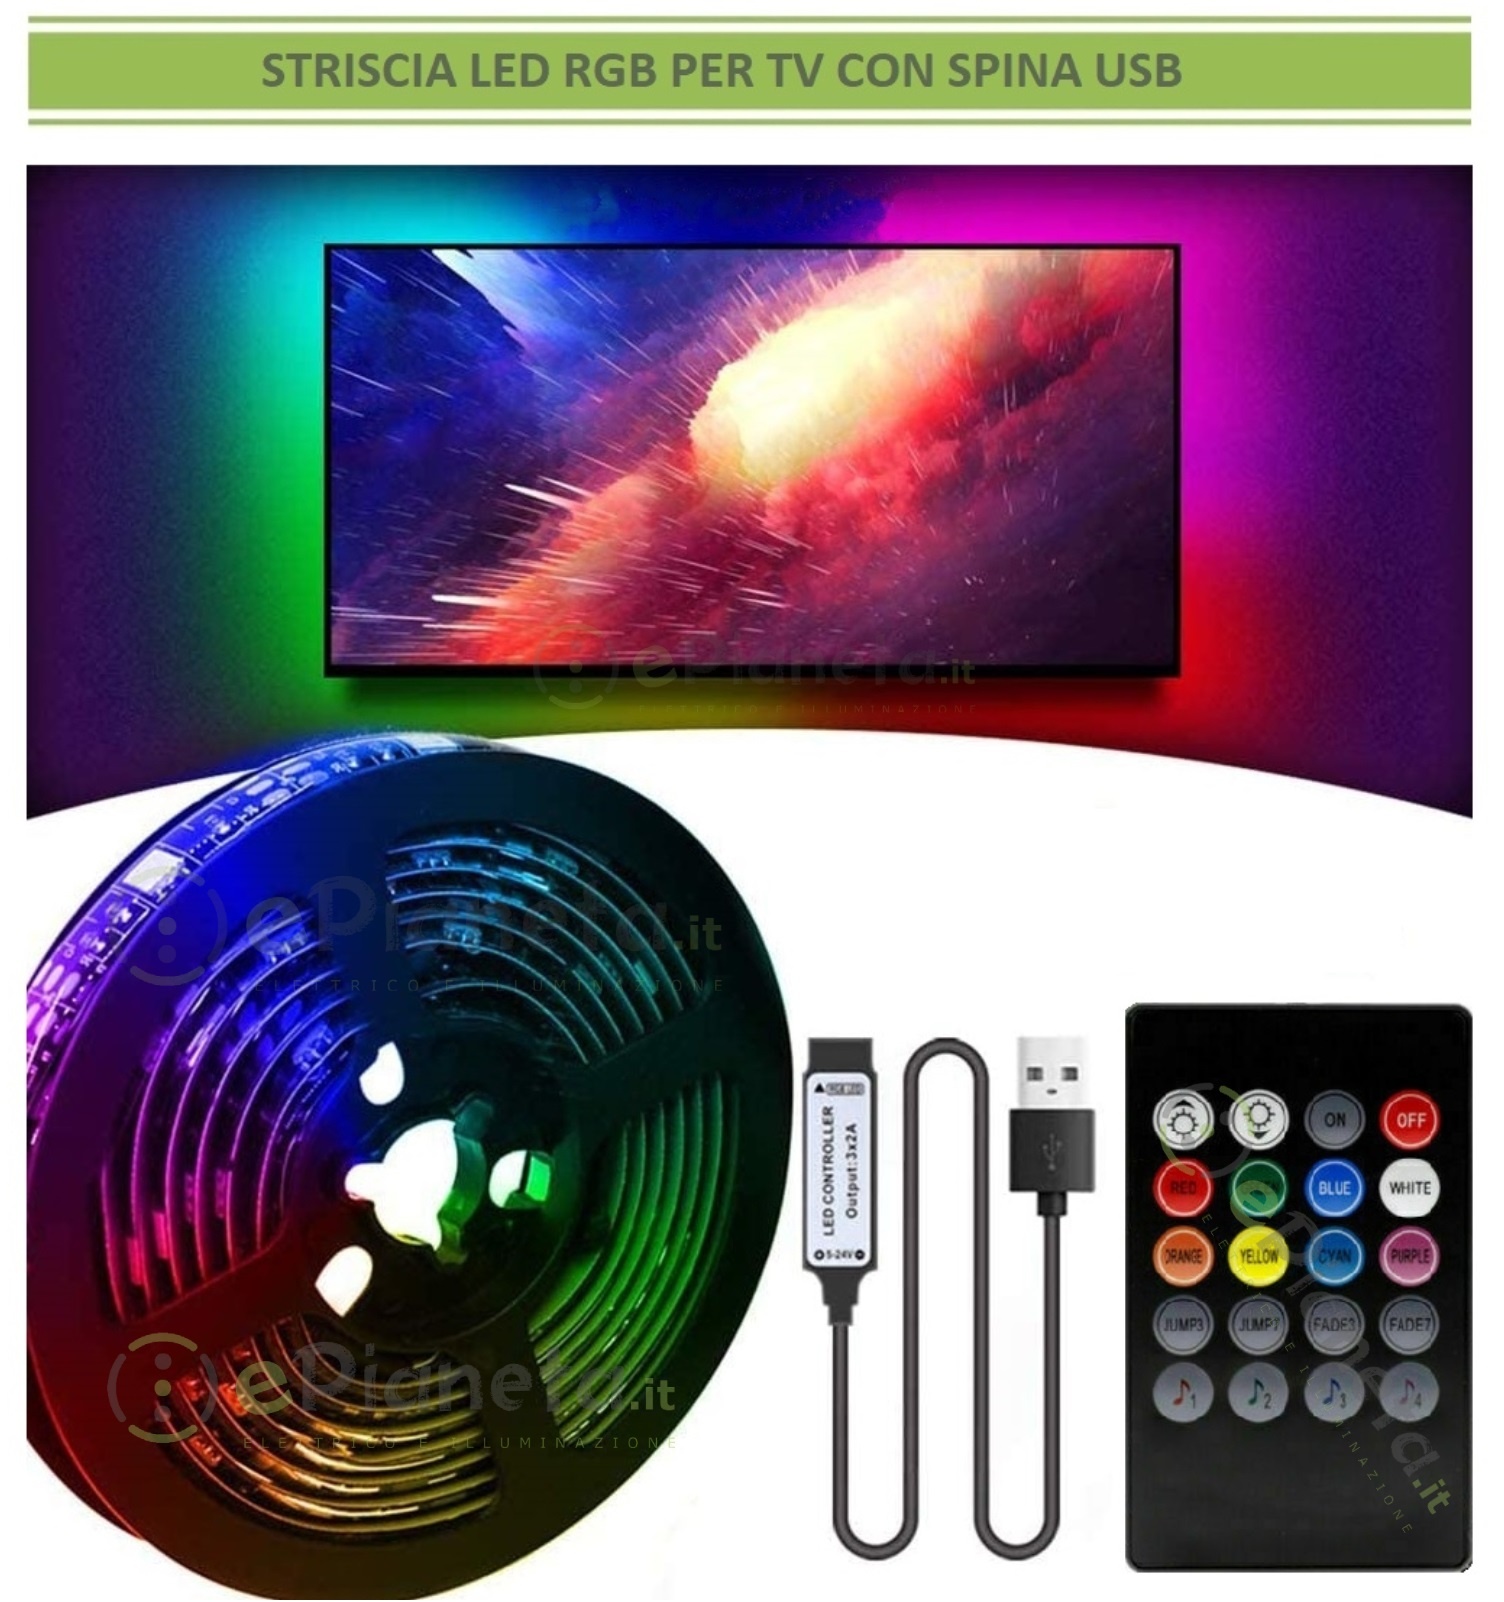 https://www.pianetalowcost.it/8983/strip-striscia-led-luce-rgb-3-5m-per-tv-televisore-retroilluminazione-multicolore-musicale-con-telecomando-con-alimentatore-usb.jpg